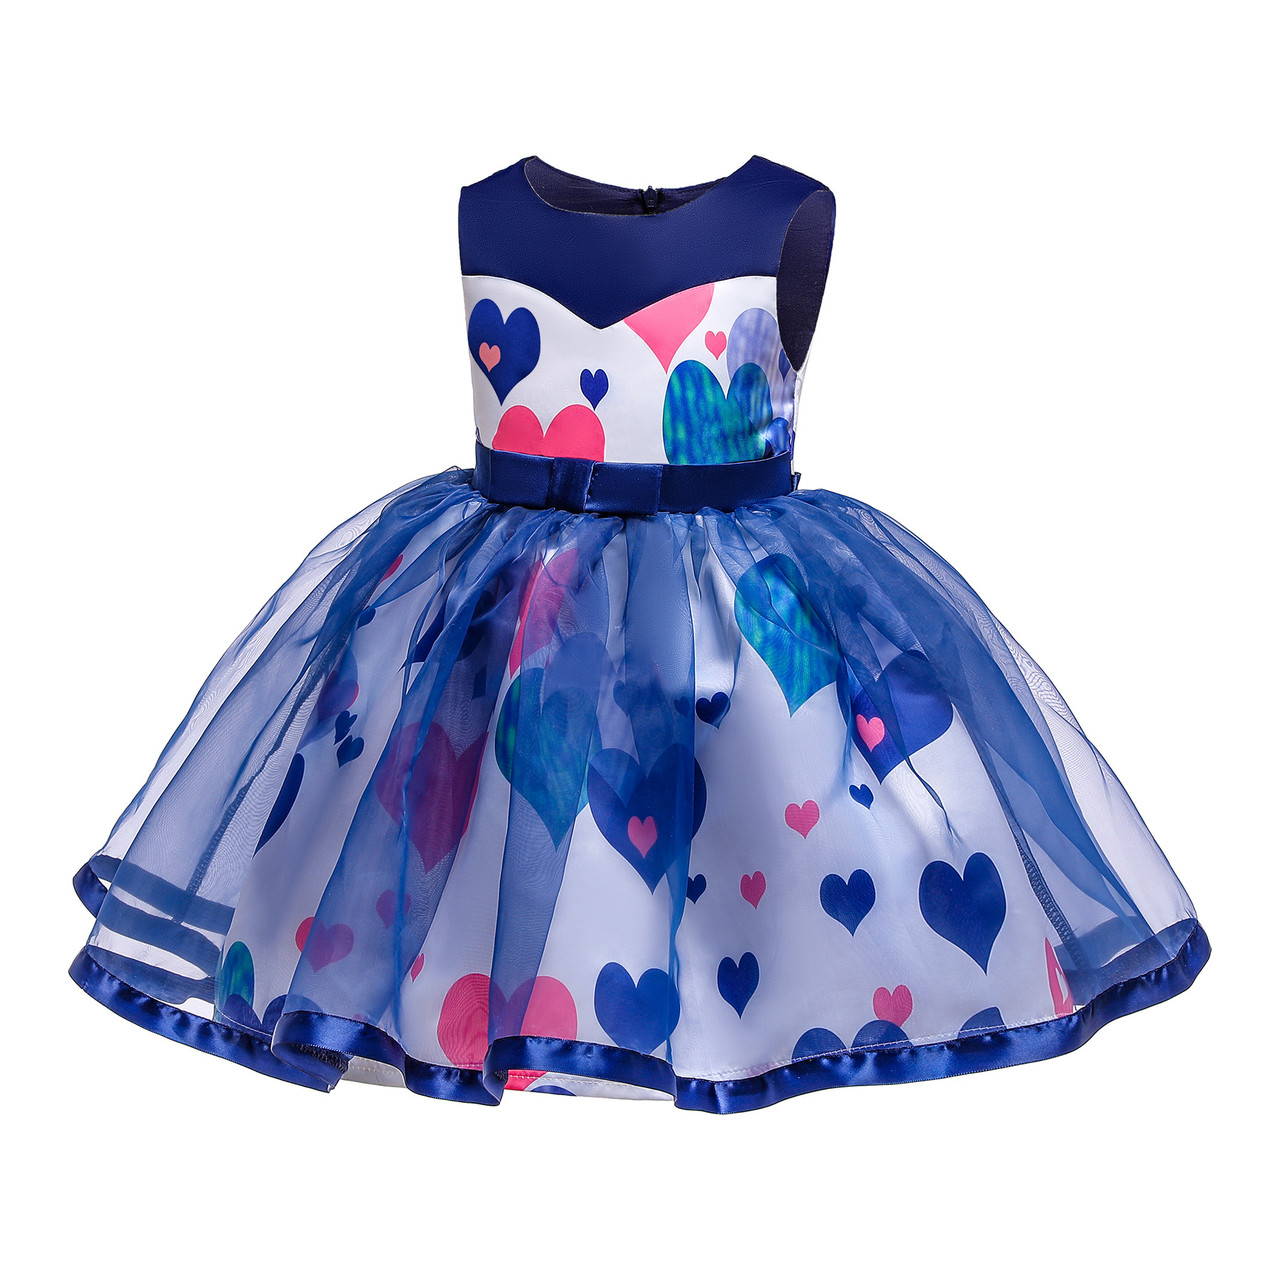 

Нарядное платье для девочки на рост 120,130,140 (P007) 150, Разные цвета